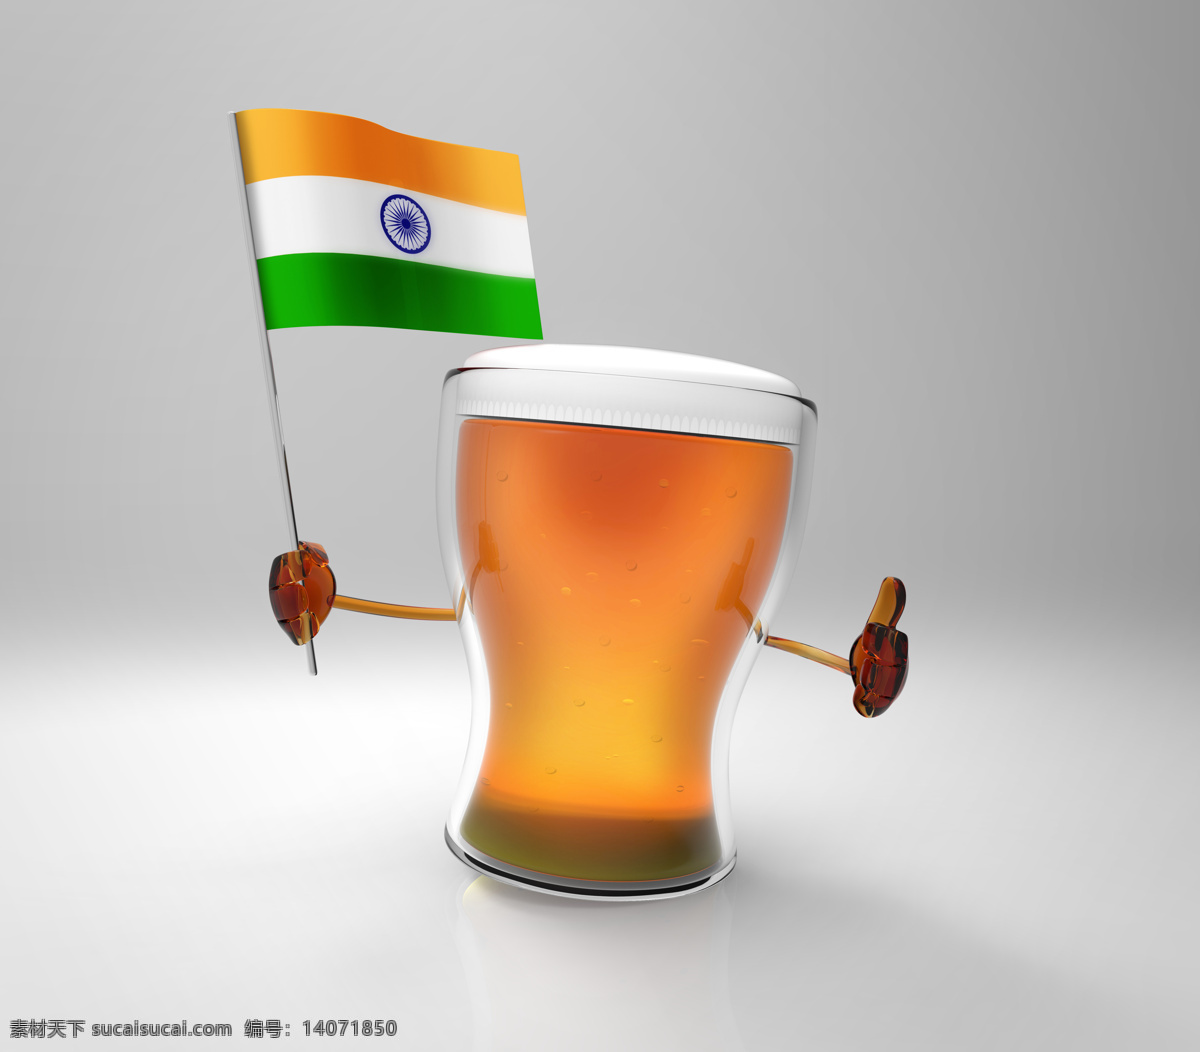 印度 国旗 啤酒 印度国旗 旗子 酒水饮料 餐饮美食 灰色